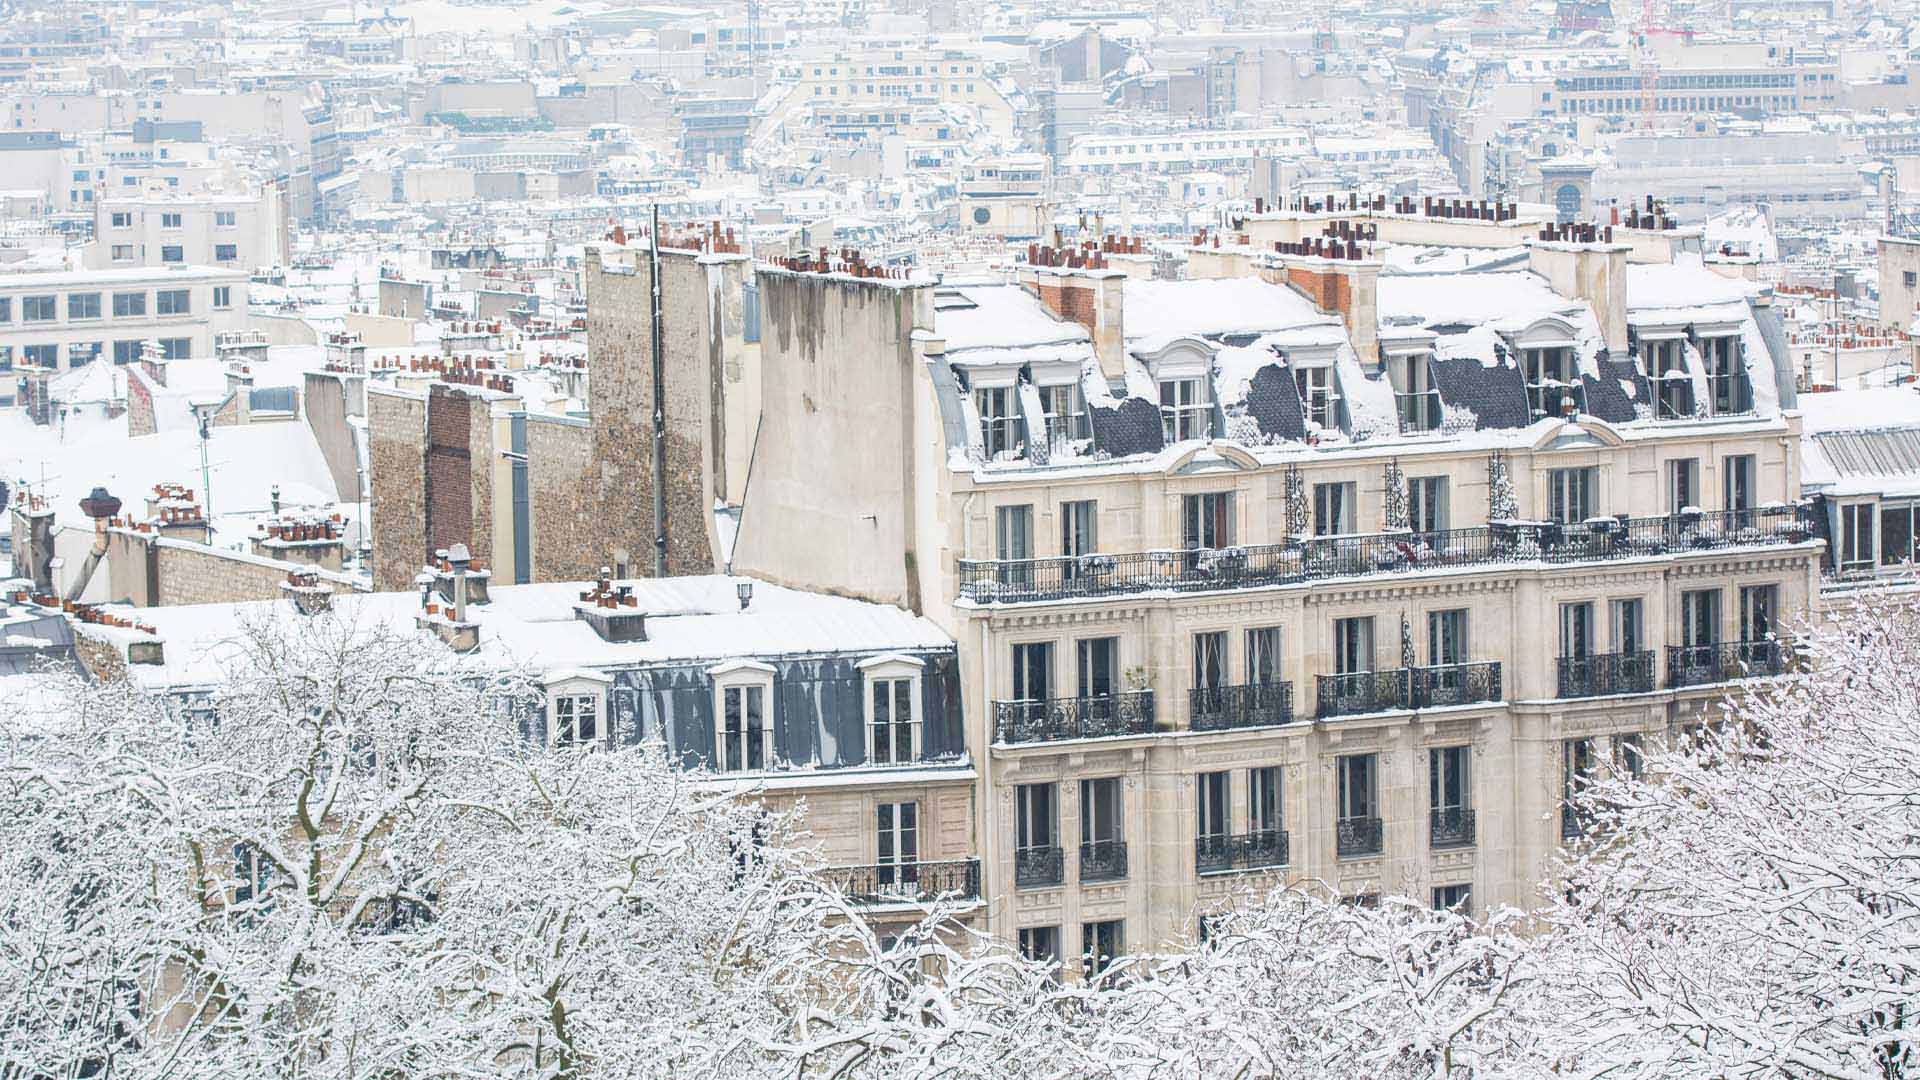 Snowey Paris